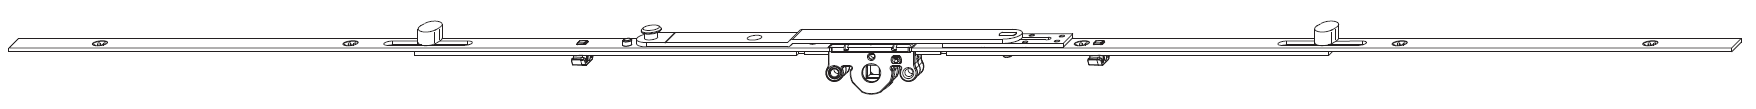 MAICO -  Cremonese MULTI-MATIC per vasistas altezza maniglia variabile con forbice per ribalta premontata - gr / dim. 1000 - entrata 15 - alt. man. CENTRALE - lbb/hbb 650 - 100